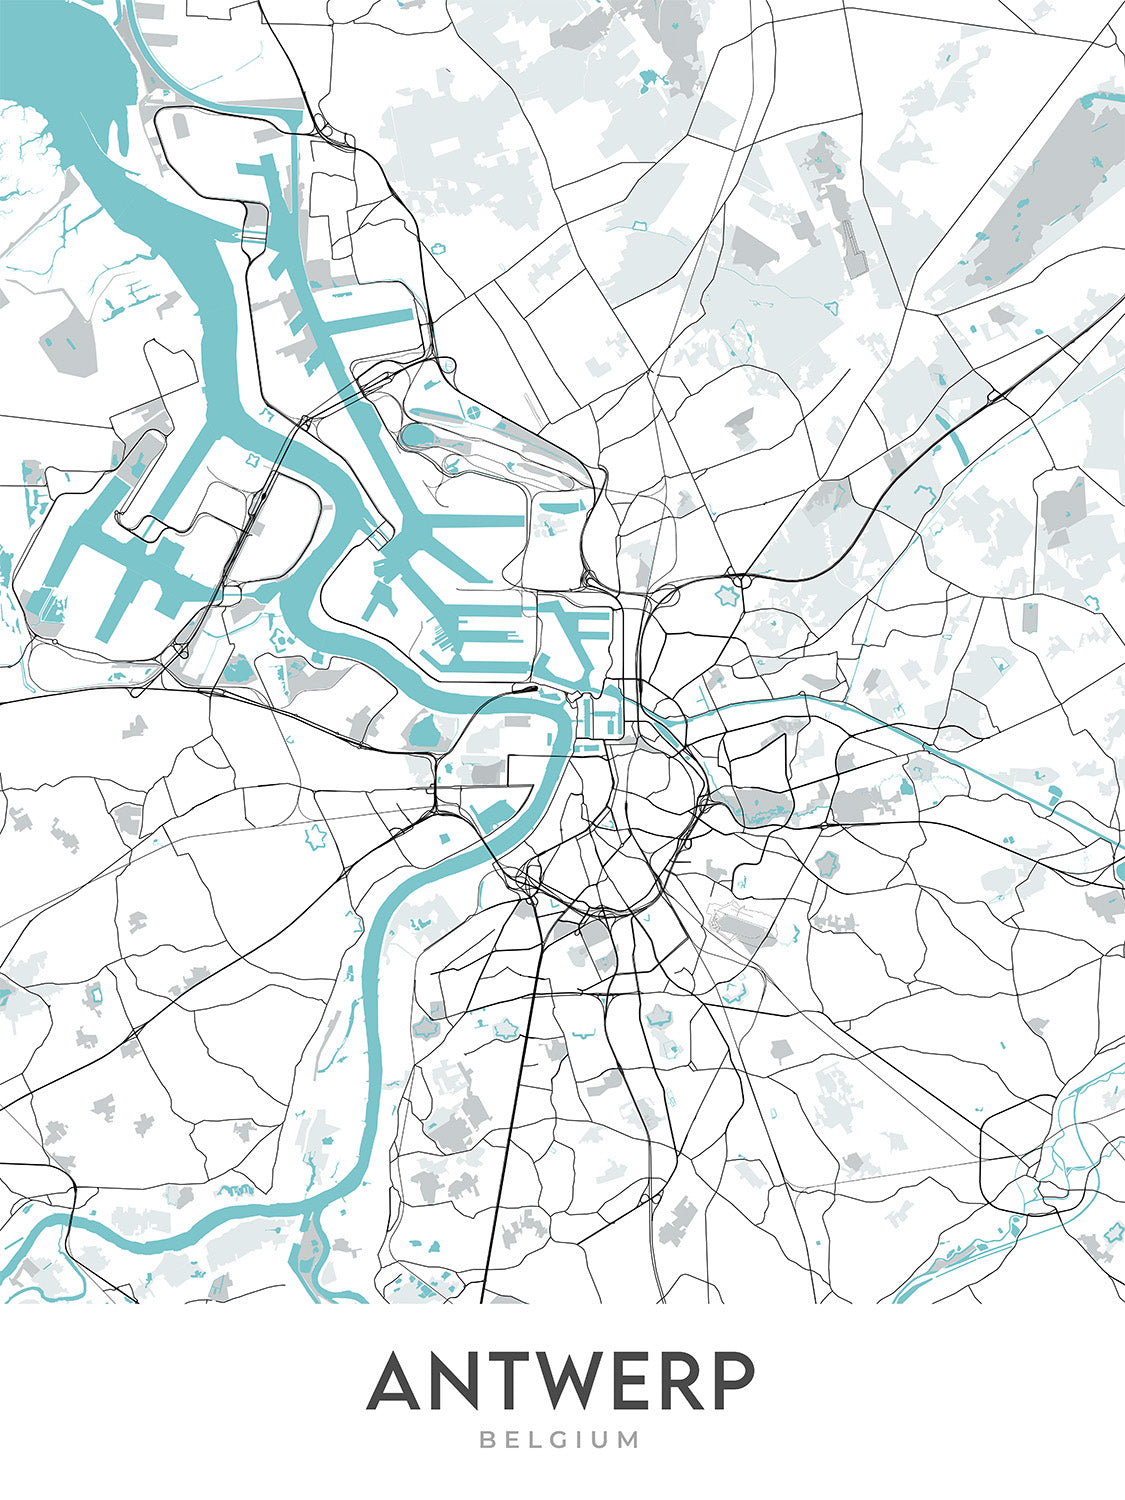 Mapa moderno de la ciudad de Amberes, Bélgica: estación central, catedral, ayuntamiento, zoológico, distrito de los diamantes